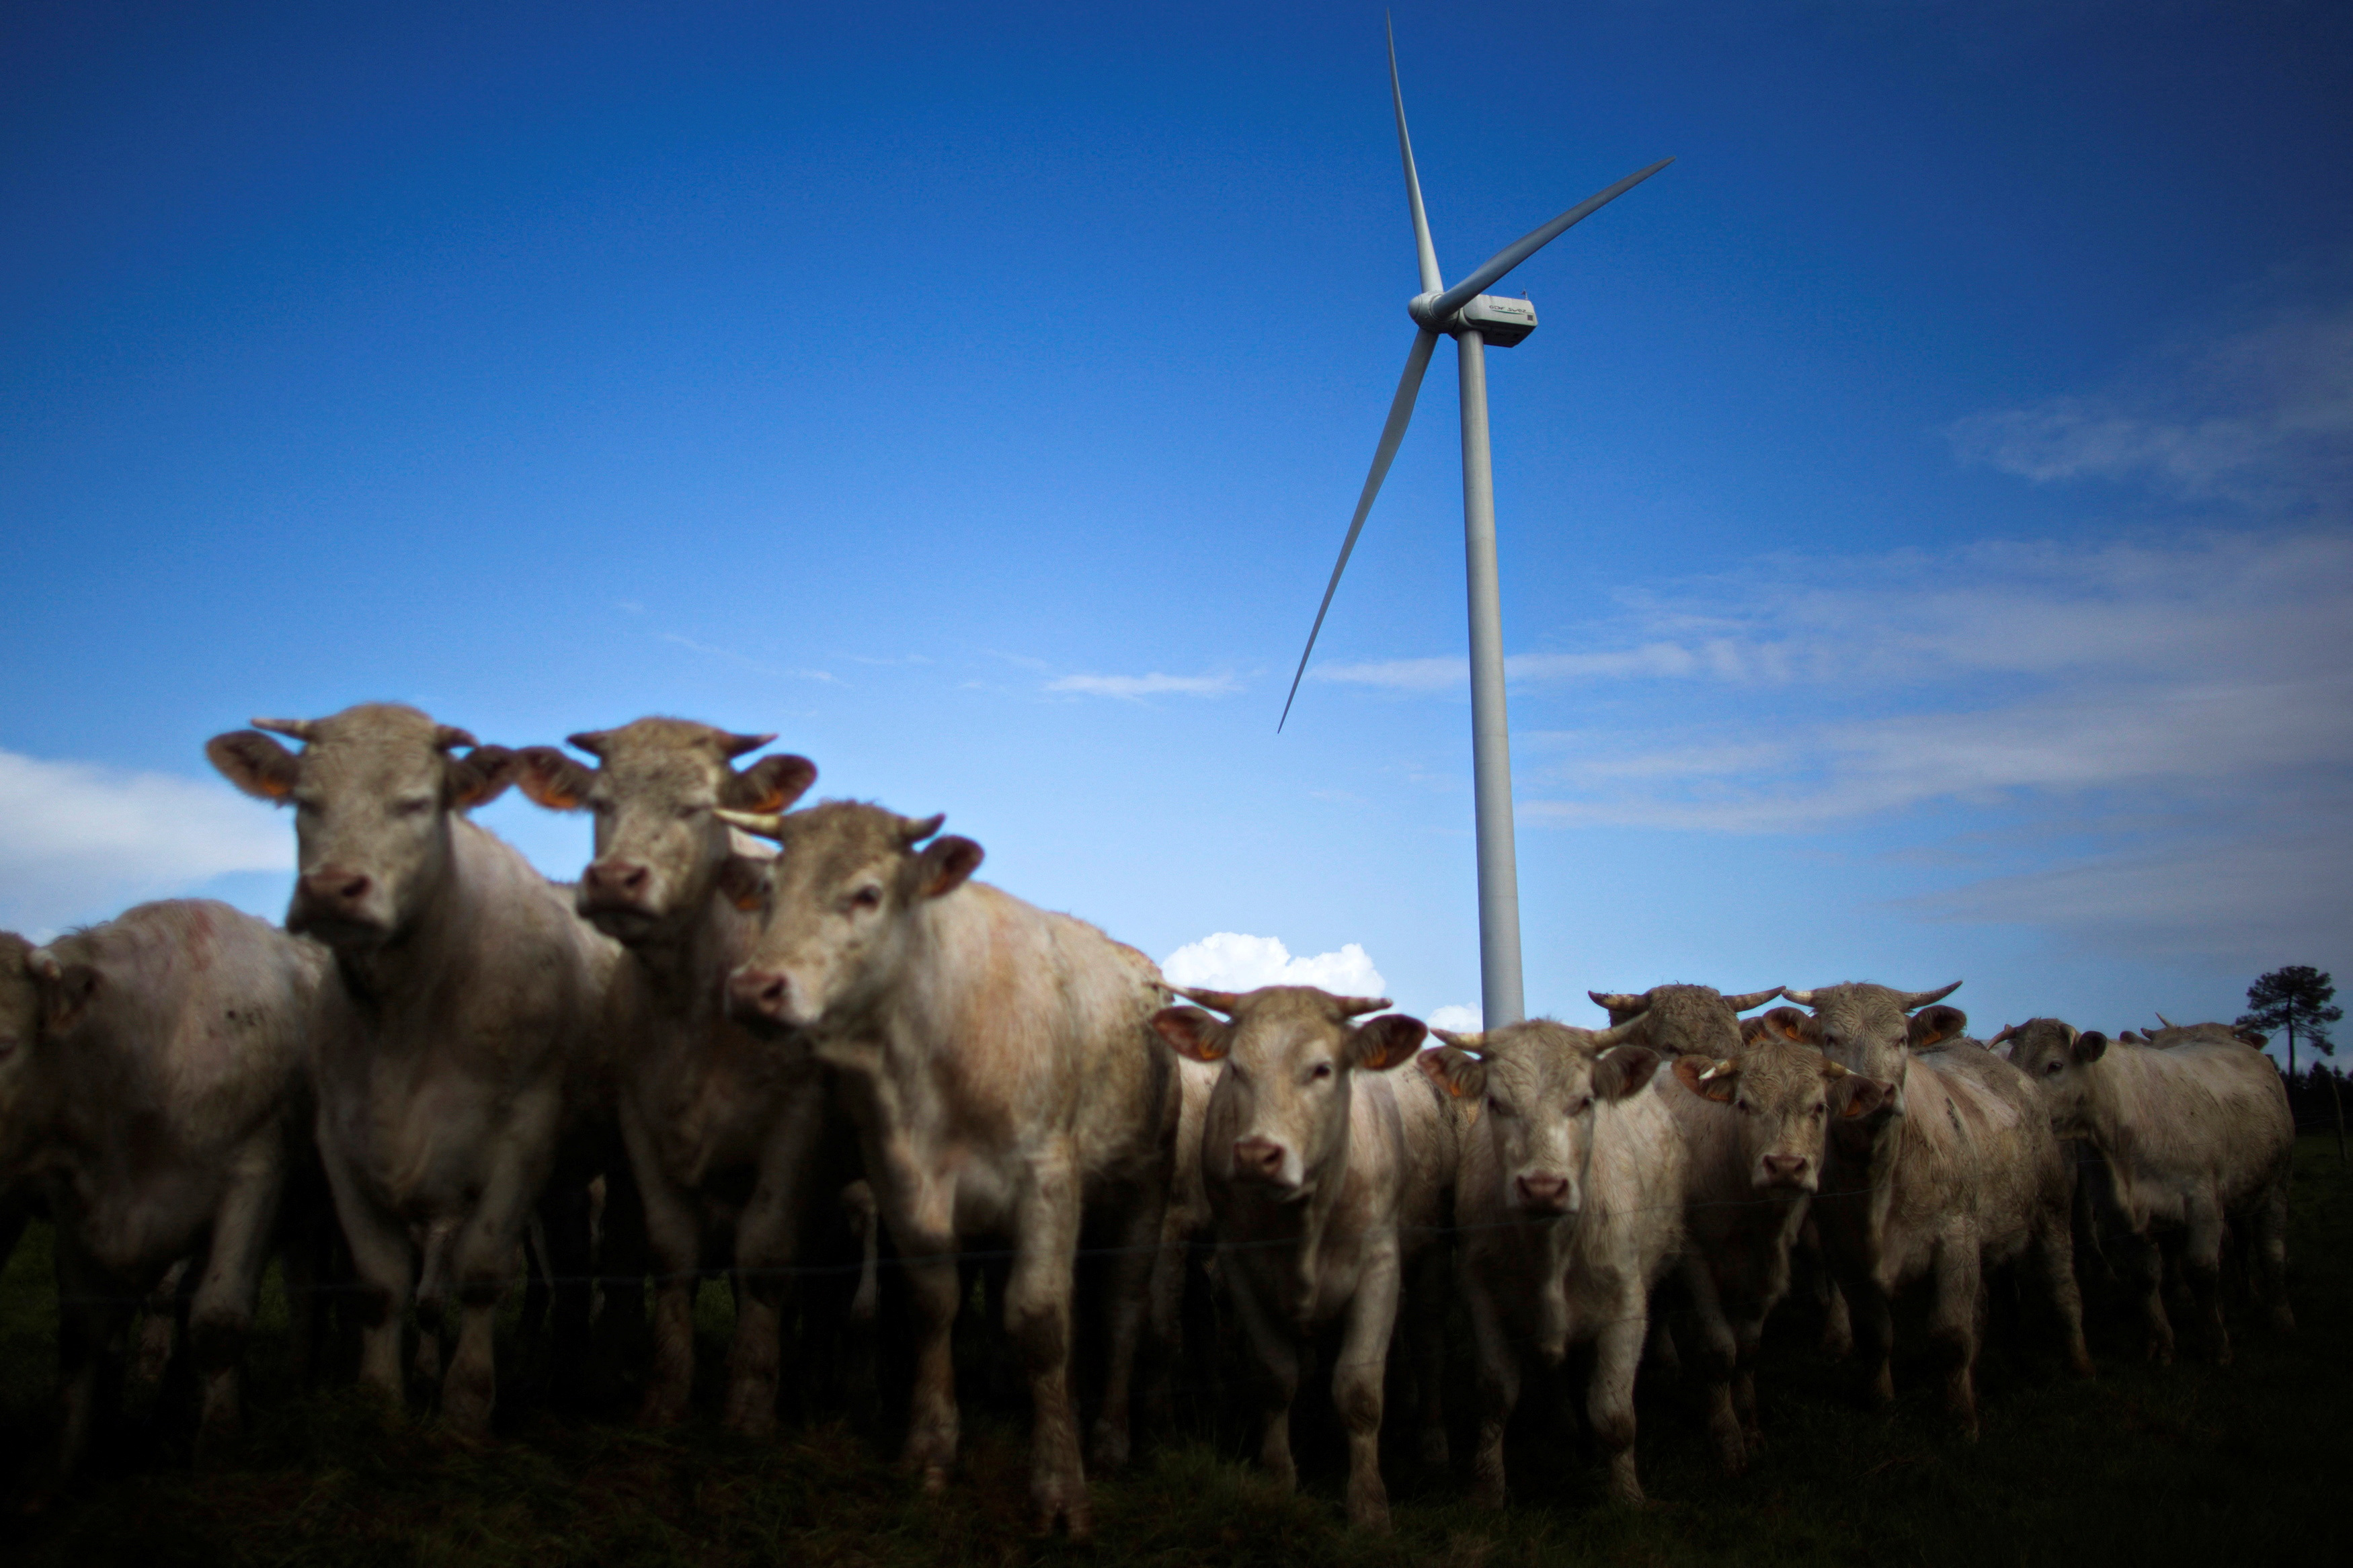 Cattle gather in a field near a wind turbine in western France